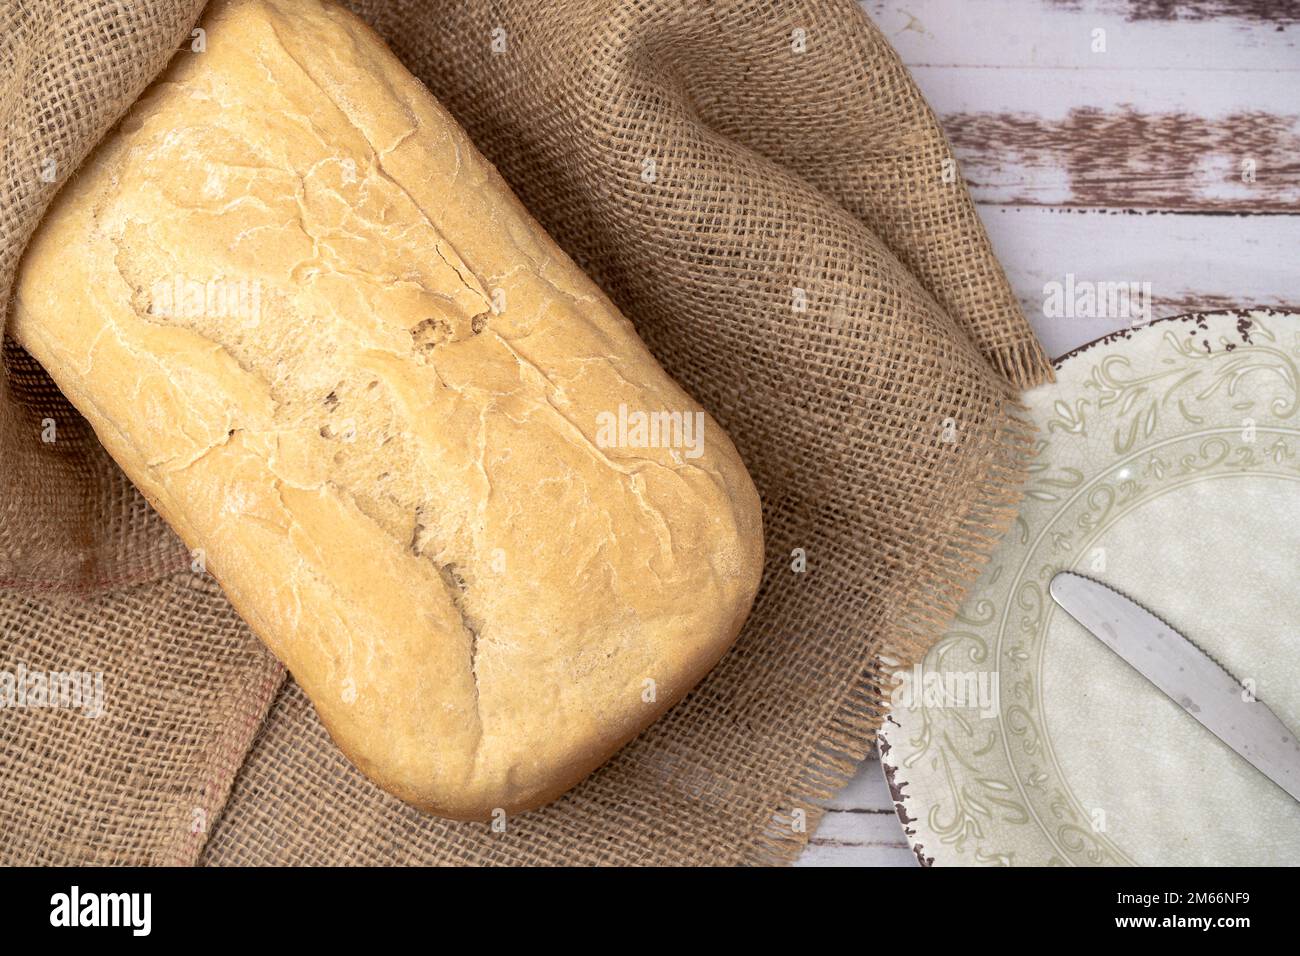 Vista aérea de pan casero hecho con una máquina de pan doméstico. Foto de stock